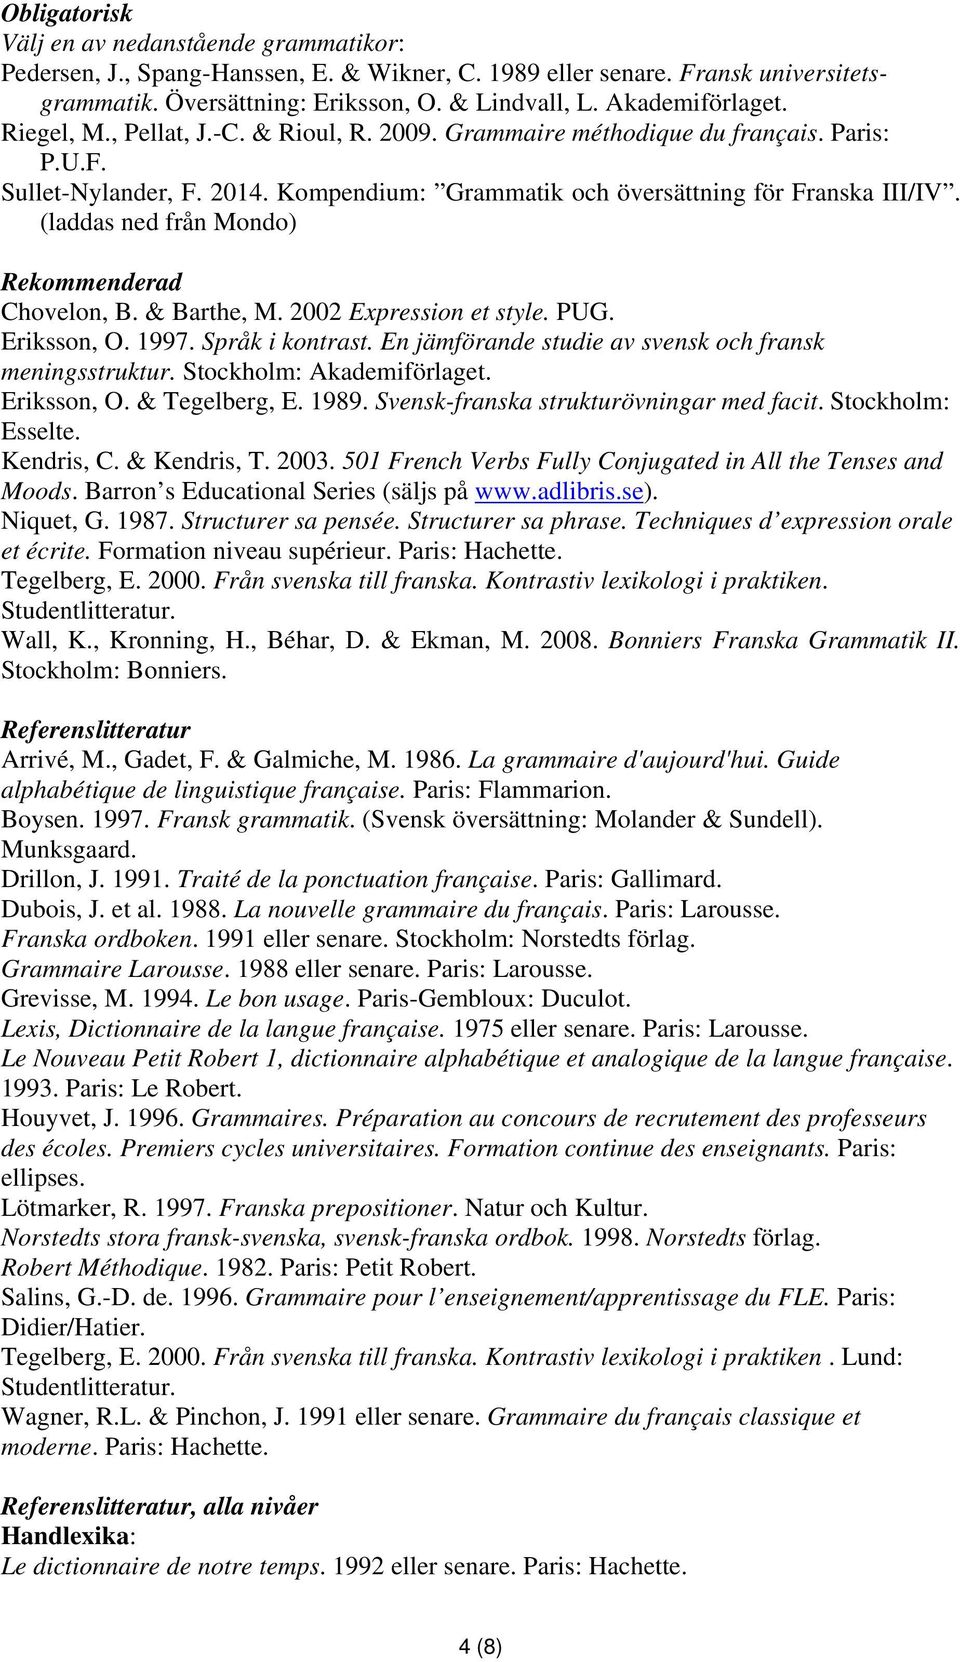 (laddas ned från Mondo) Rekommenderad Chovelon, B. & Barthe, M. 2002 Expression et style. PUG. Eriksson, O. 1997. Språk i kontrast. En jämförande studie av svensk och fransk meningsstruktur.